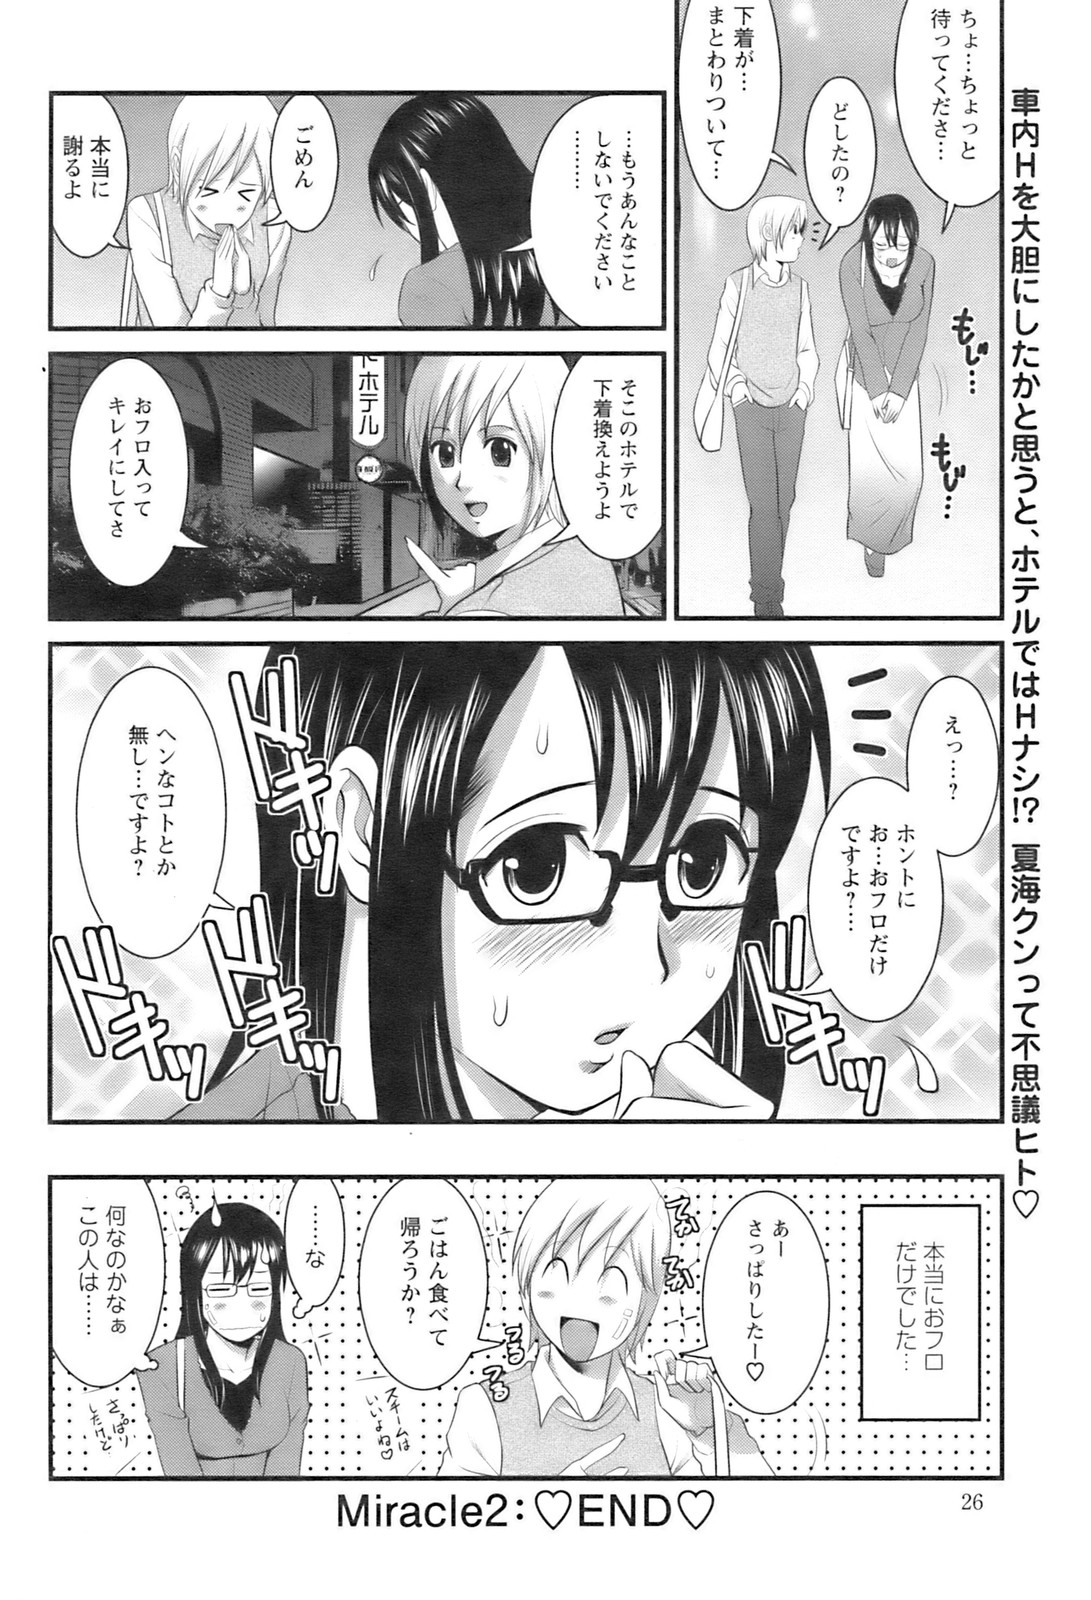 [Saigado] Otaku no Megami san (Miracle 1-2-3-4-6-11-12) page 40 full